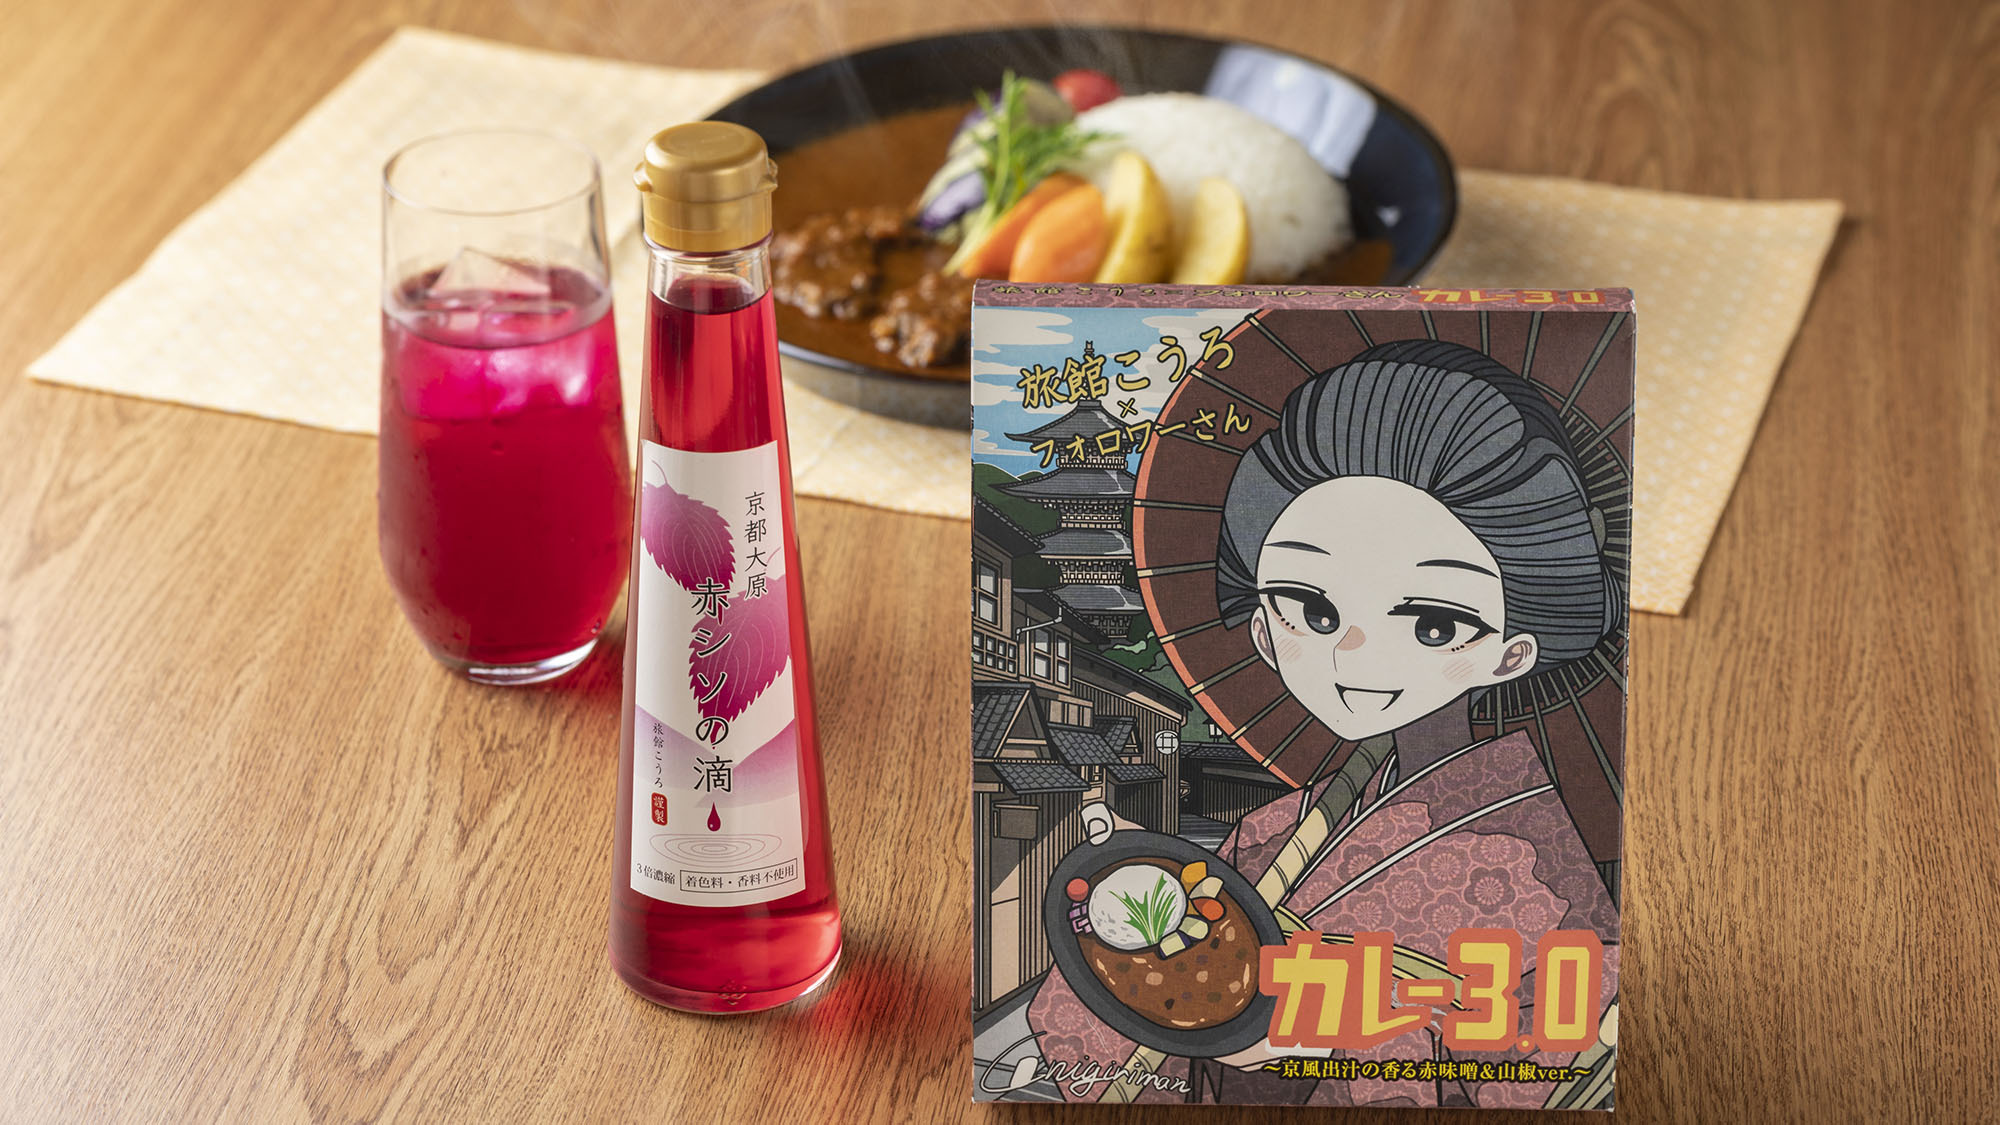 ・【オンラインショップ】宿オリジナルの「カレー3.0」と京都大原産の赤シソジュース「赤シソの滴」